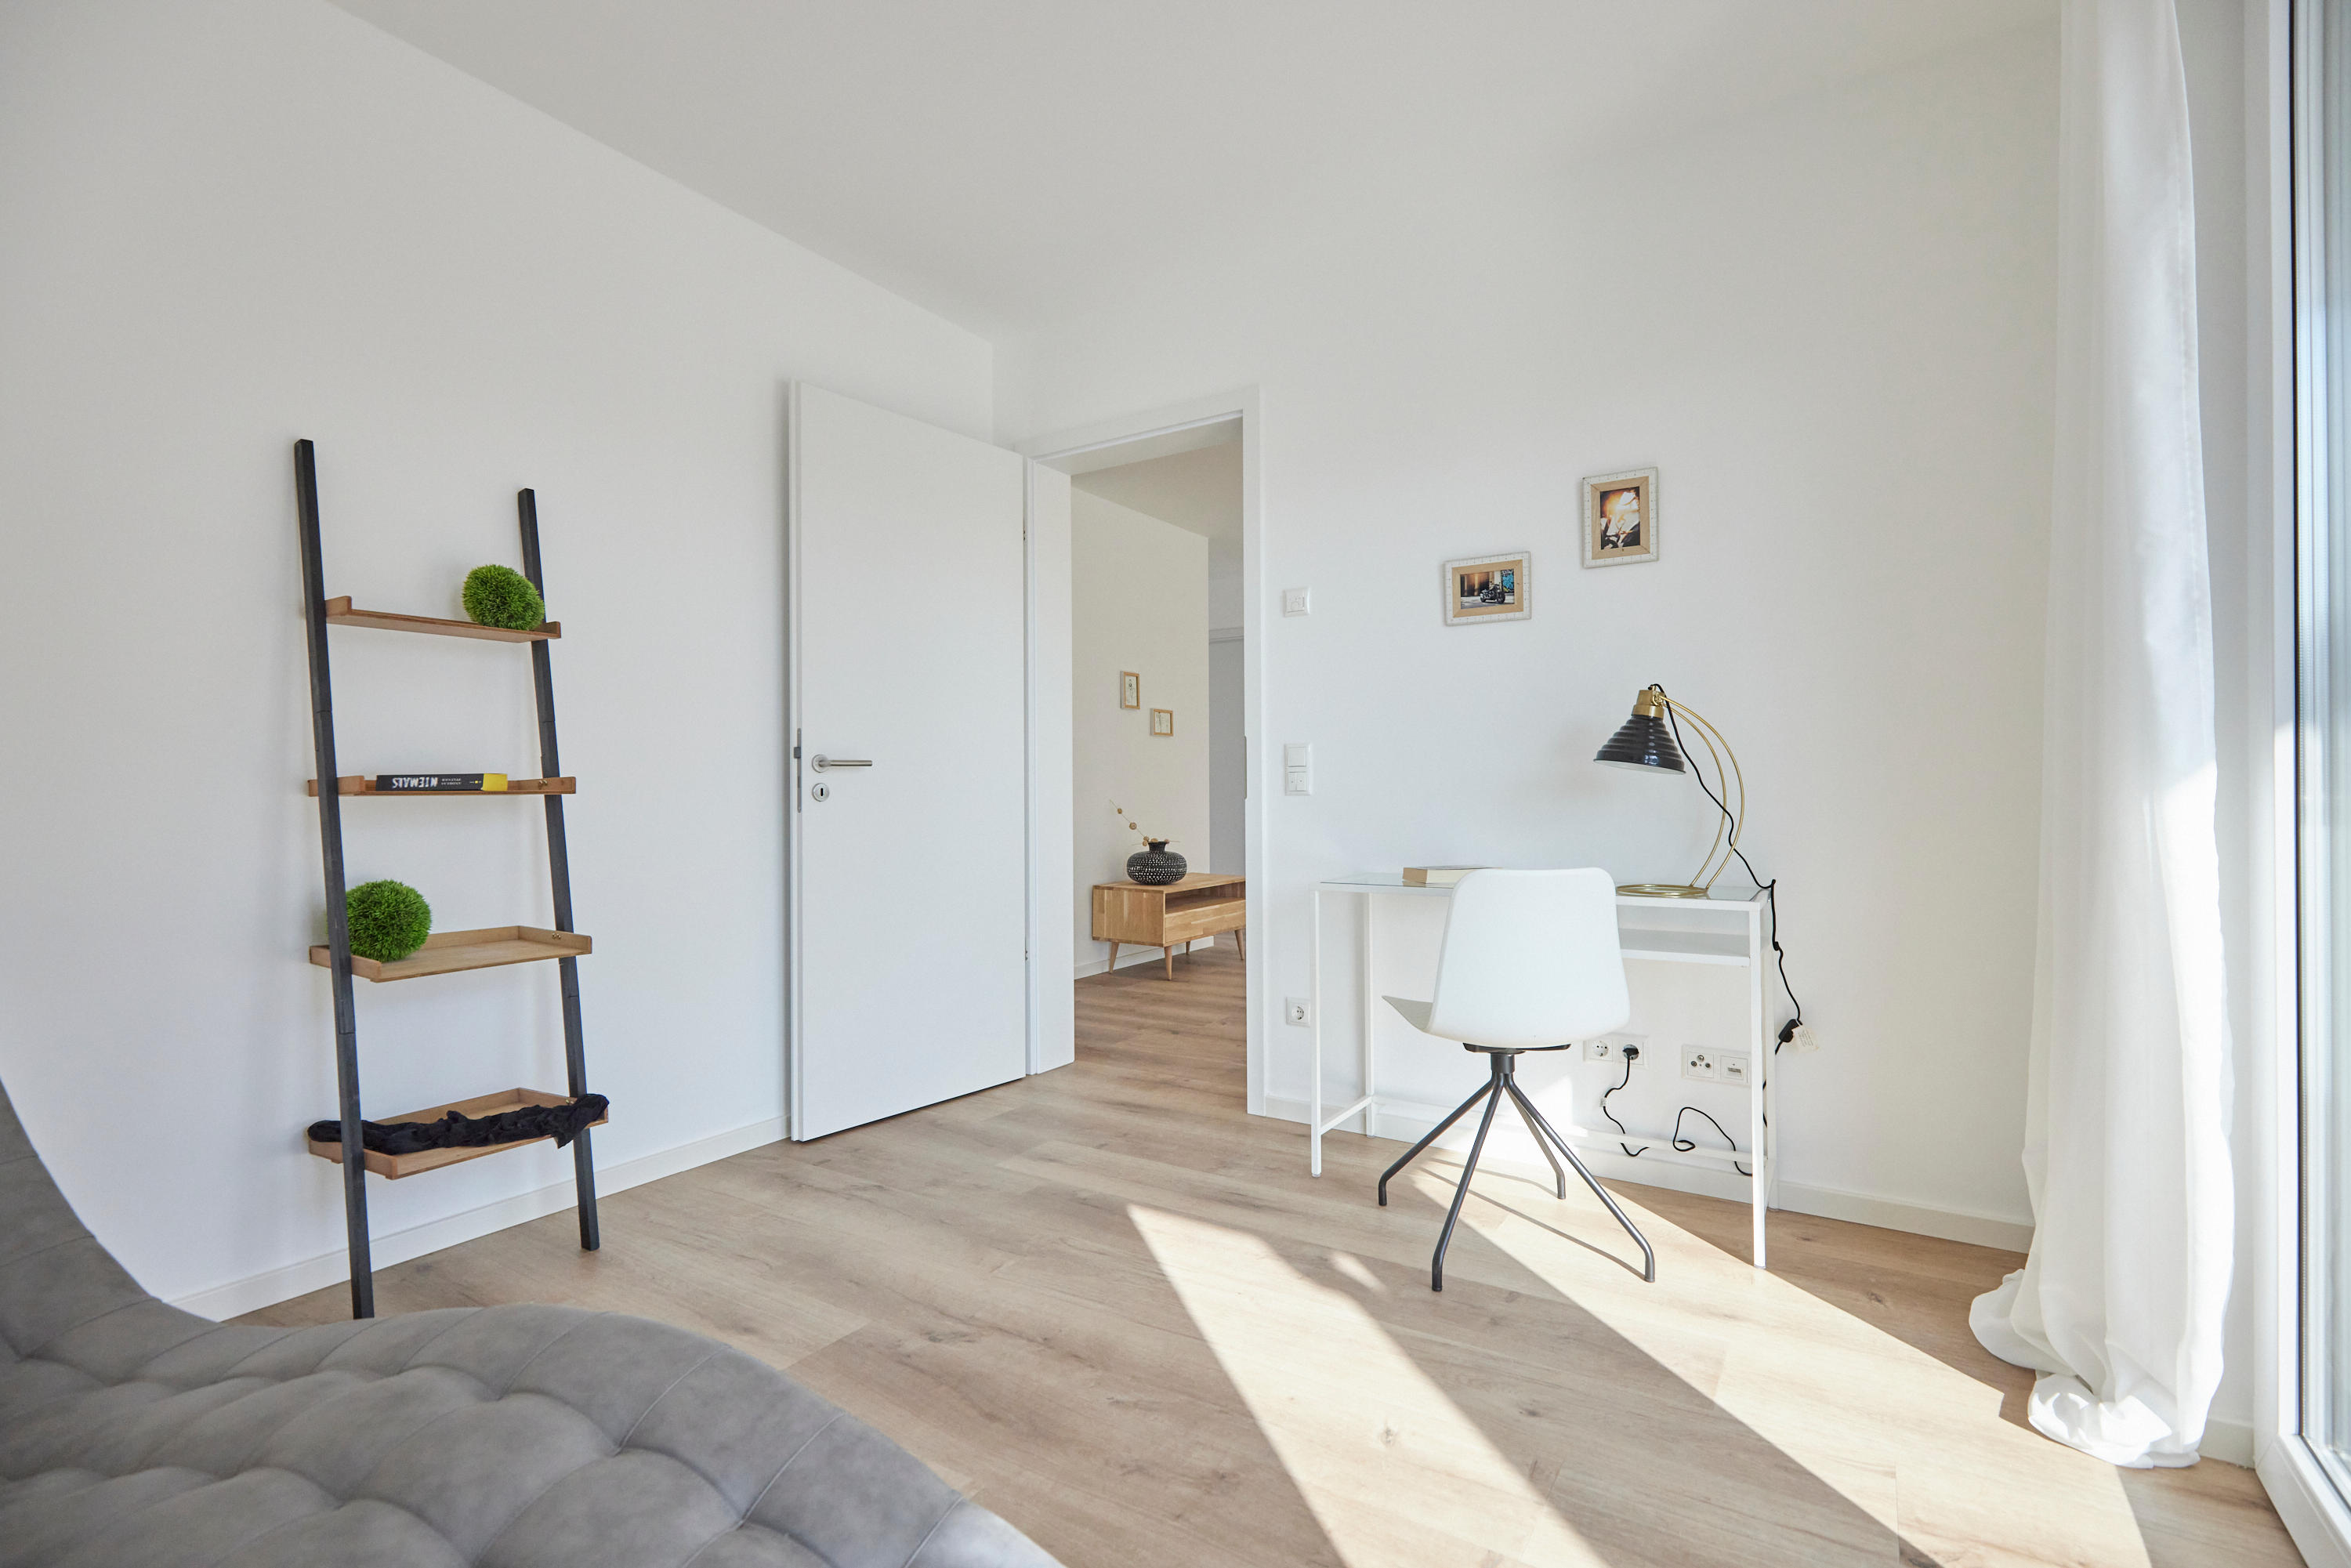 Bilder STAGING DUO – Home Staging Agentur in Düsseldorf